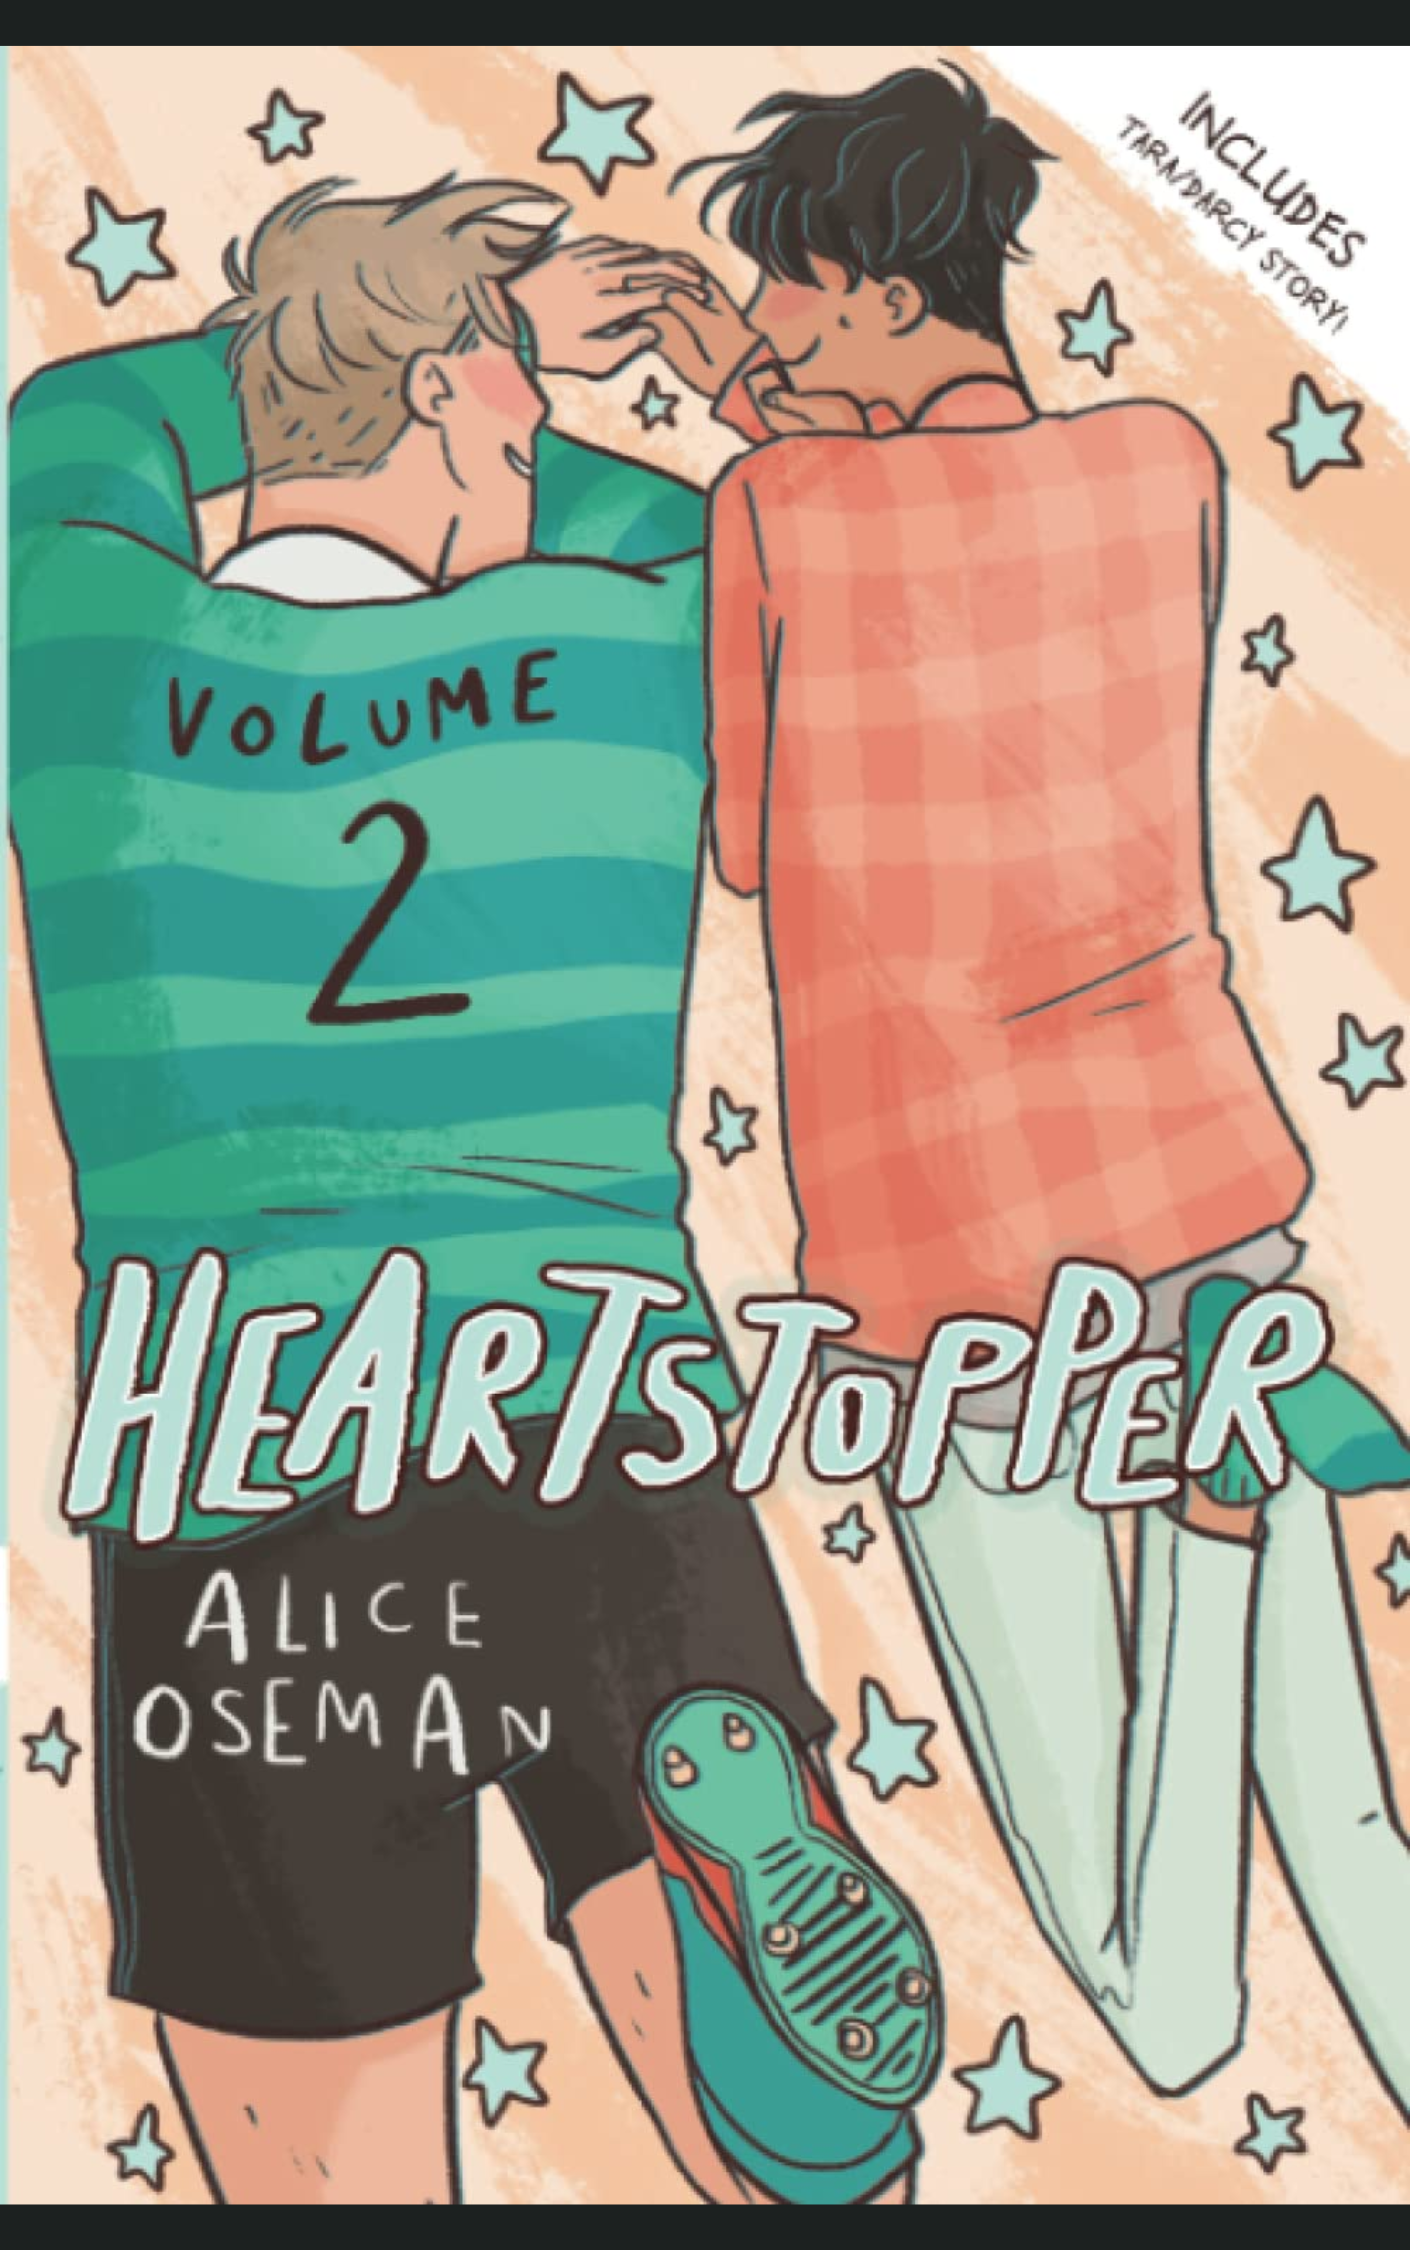 HEARTSTOPPER: VOLUME 2 by ALICE OSEMAN